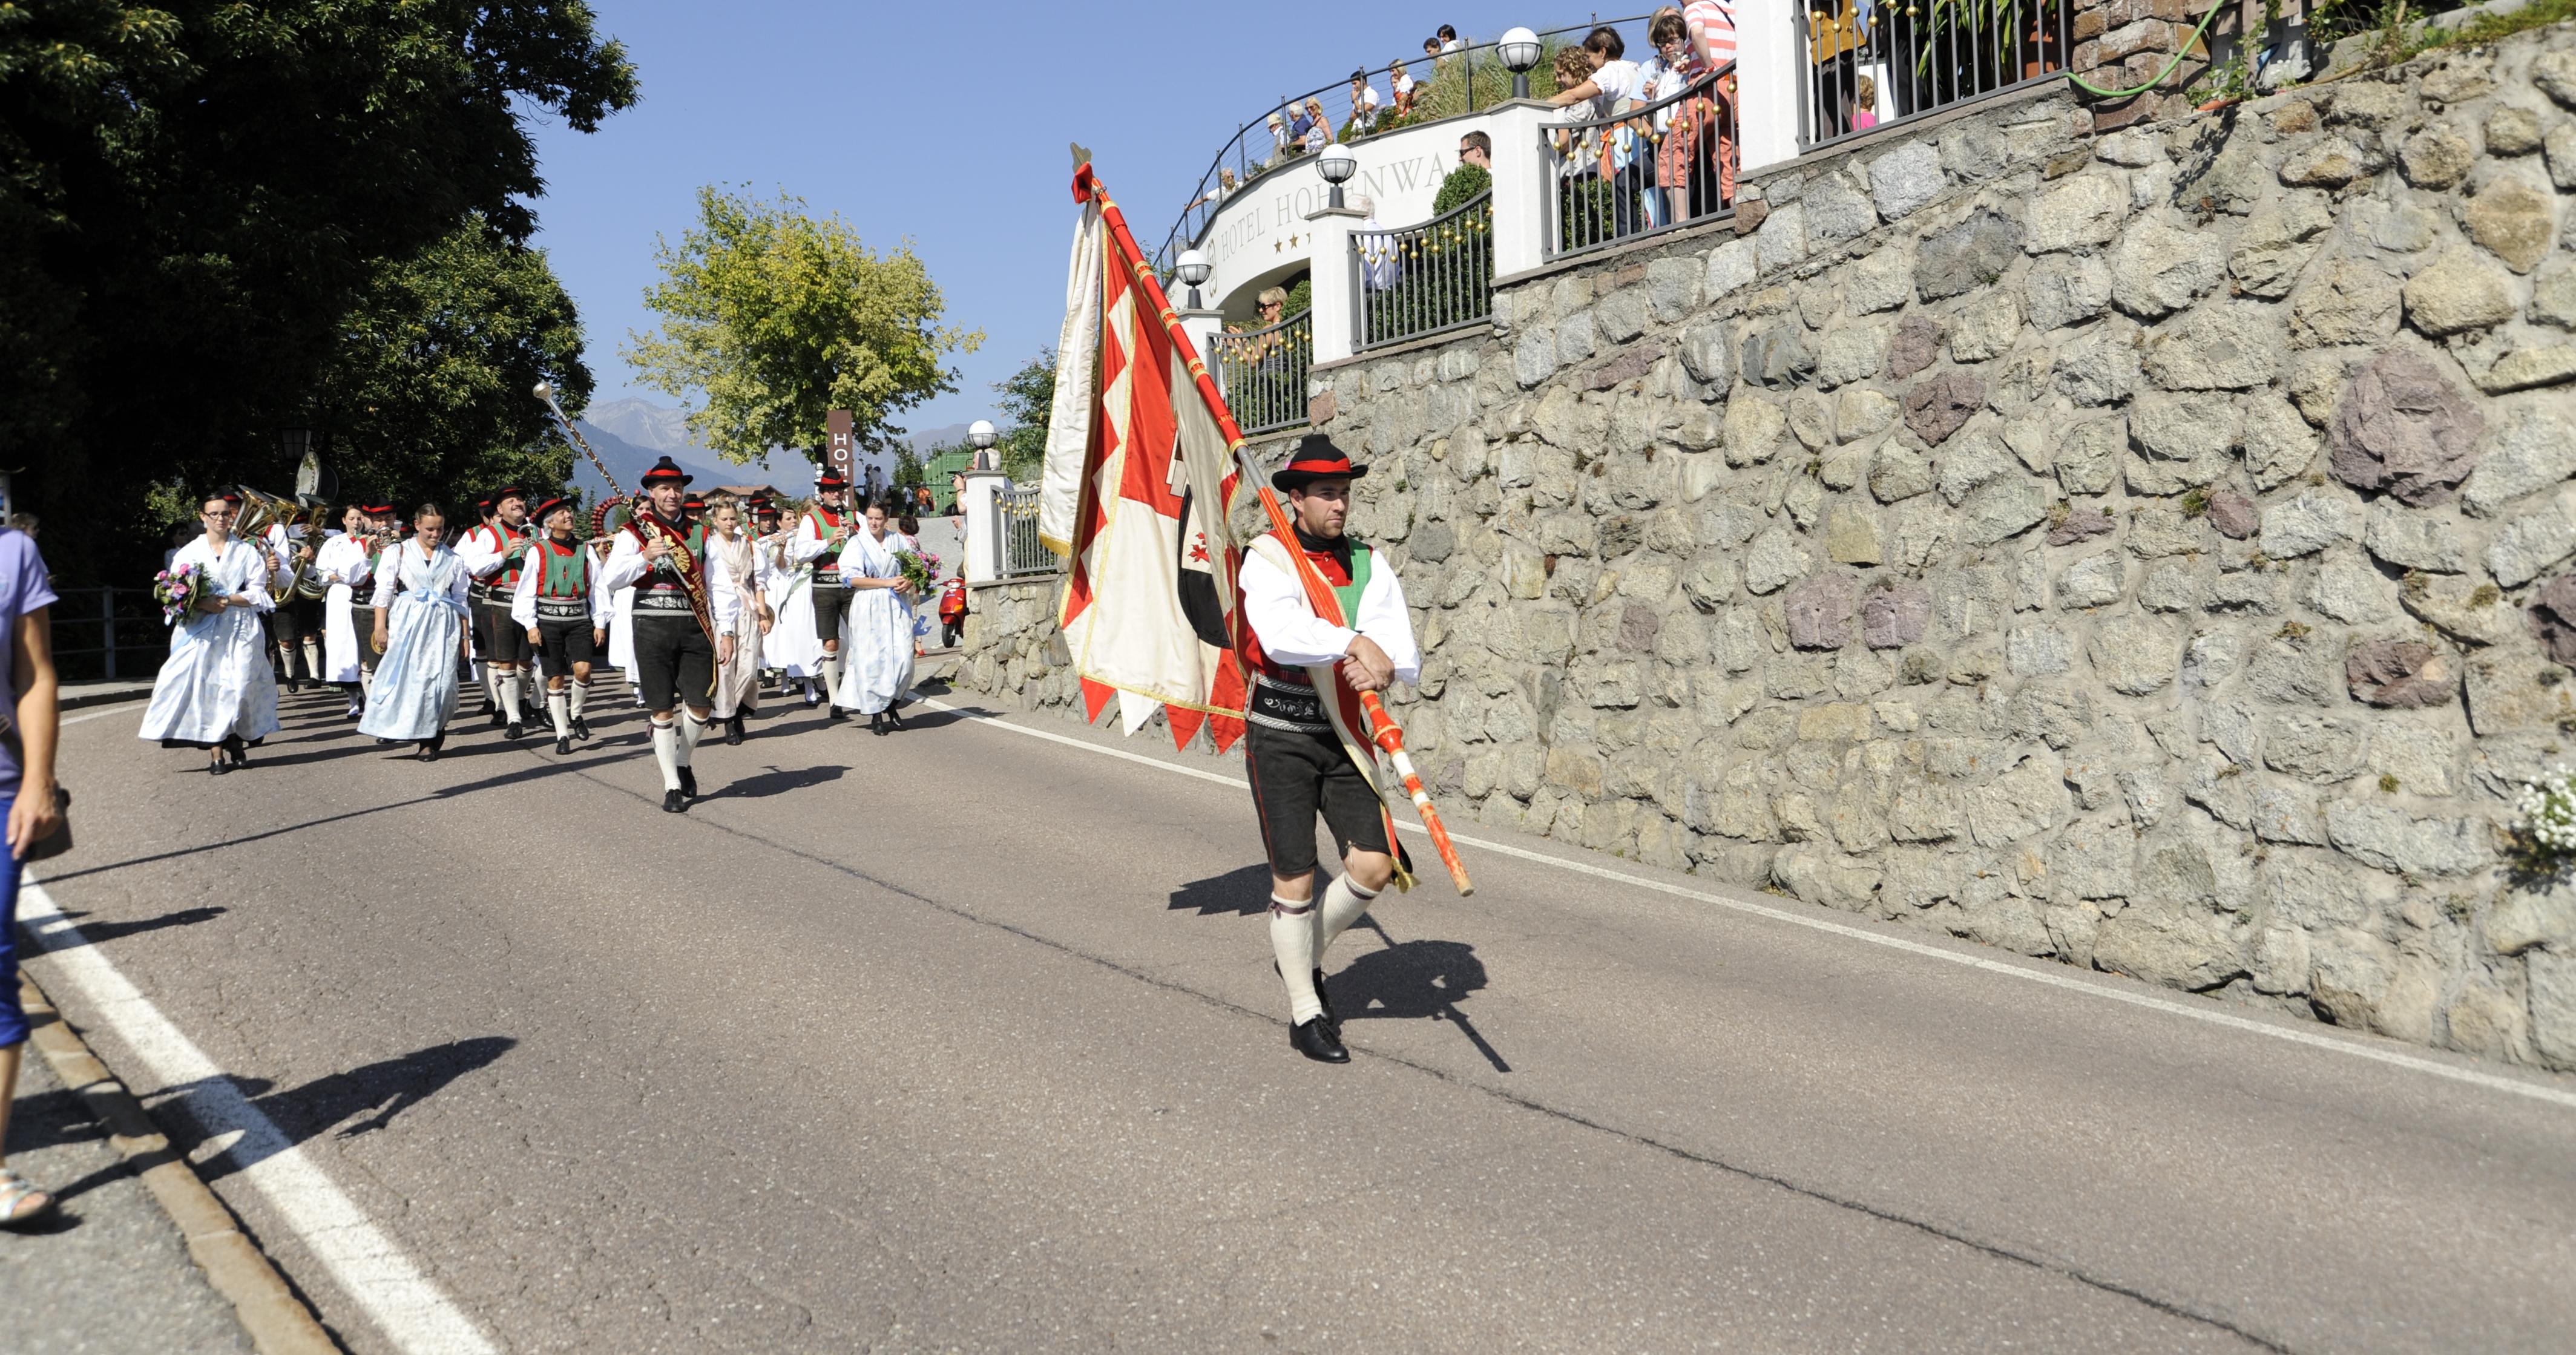 Südtiroler Brauchtum und Traditionen in Schenna, Südtirol